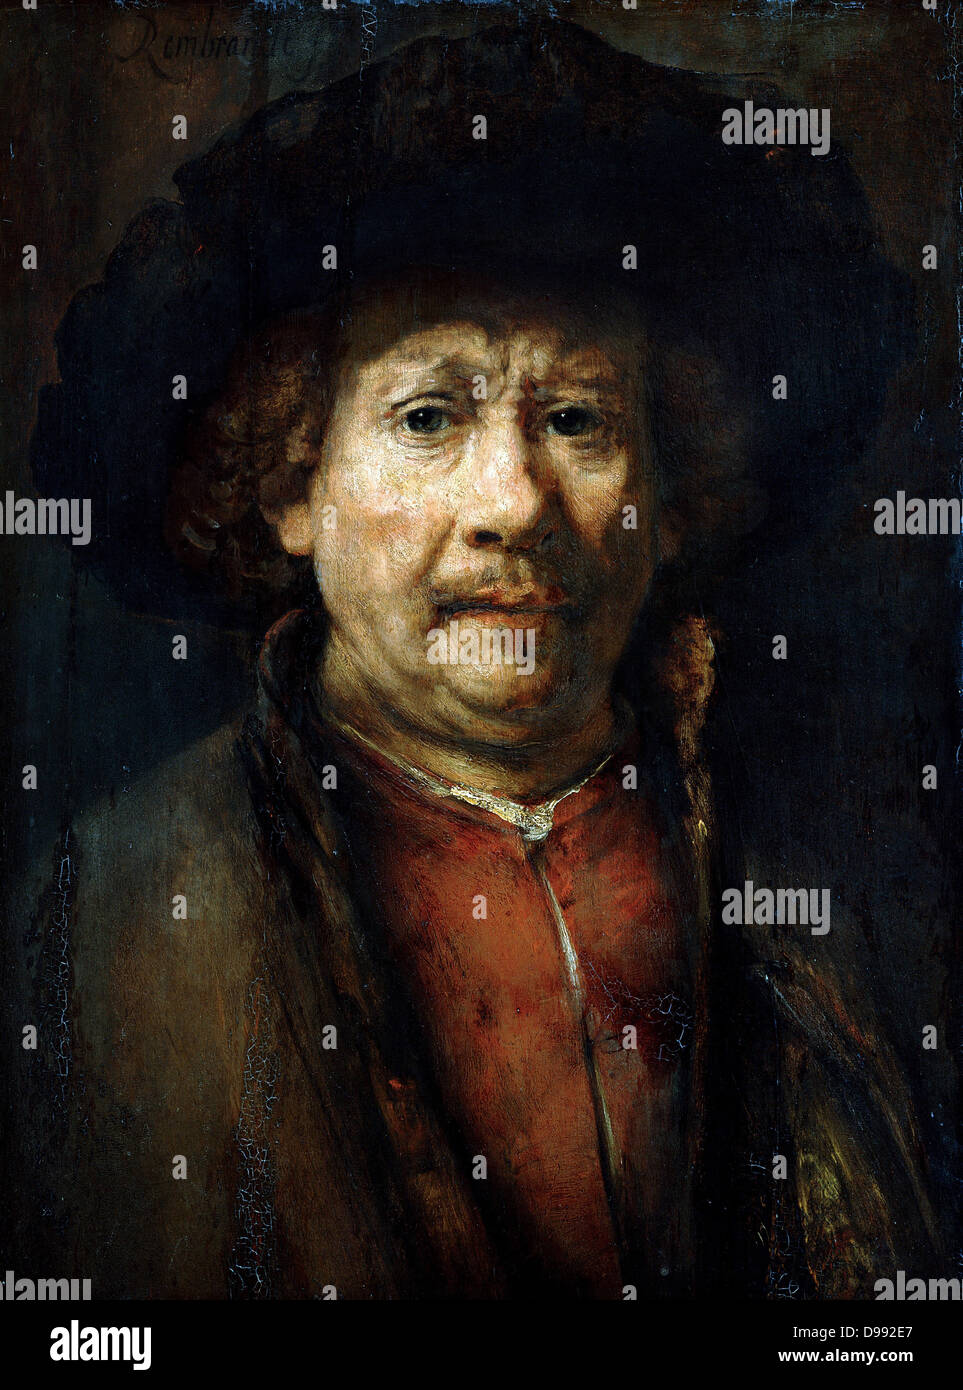 Ritratto Di Auto", 1637. Olio su tela. Rembrandt van Rijn (1606-1669), pittore olandese. Testa e spalle immagine con oggetto rivolta verso il lato anteriore. Foto Stock